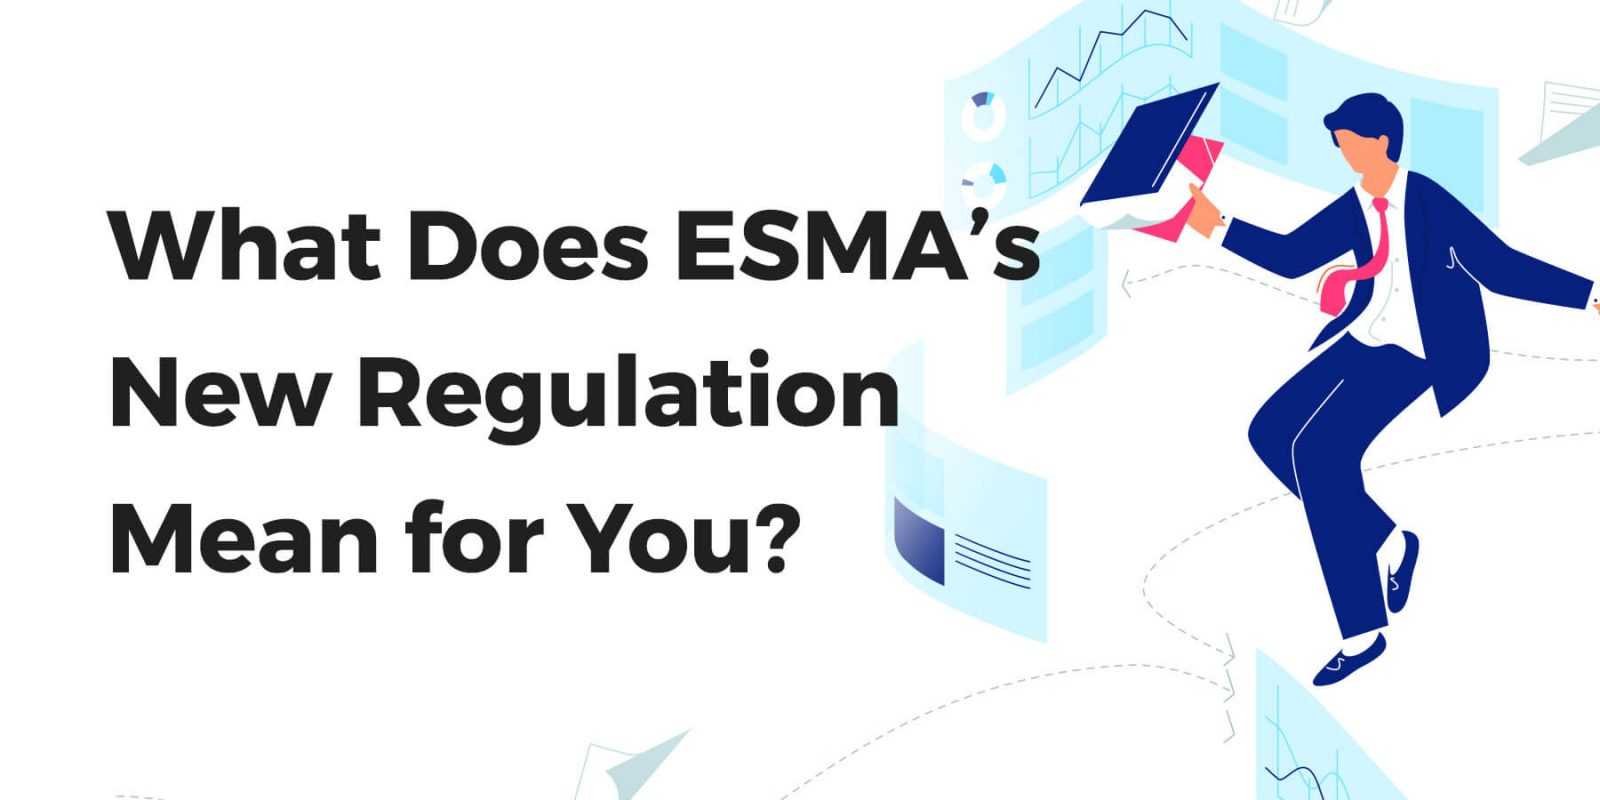 Quy định mới của ESMA có ý nghĩa gì đối với bạn?